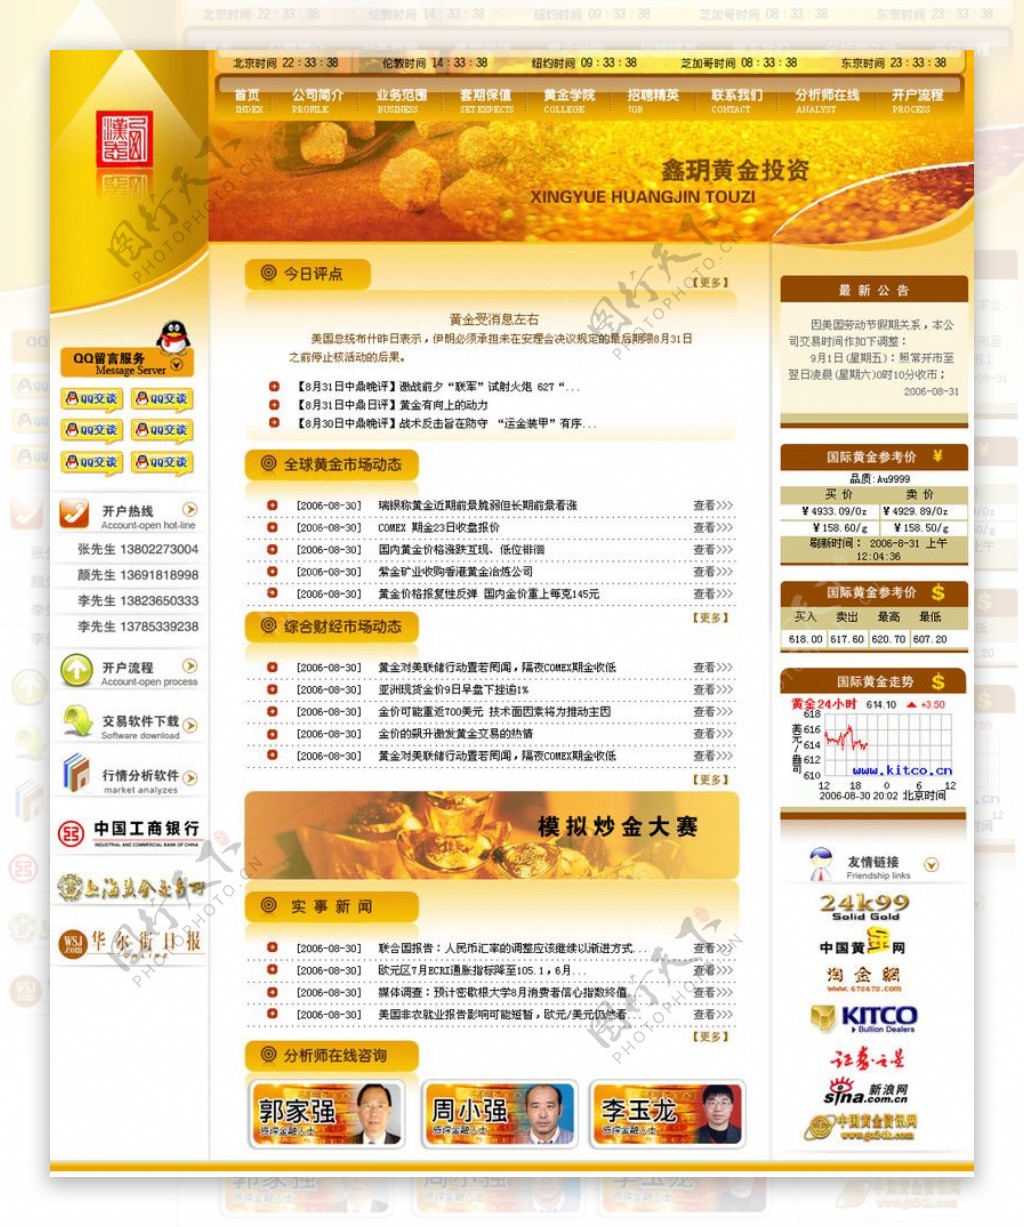 我们为客户设计的黄颜色的黄金投资网站图片